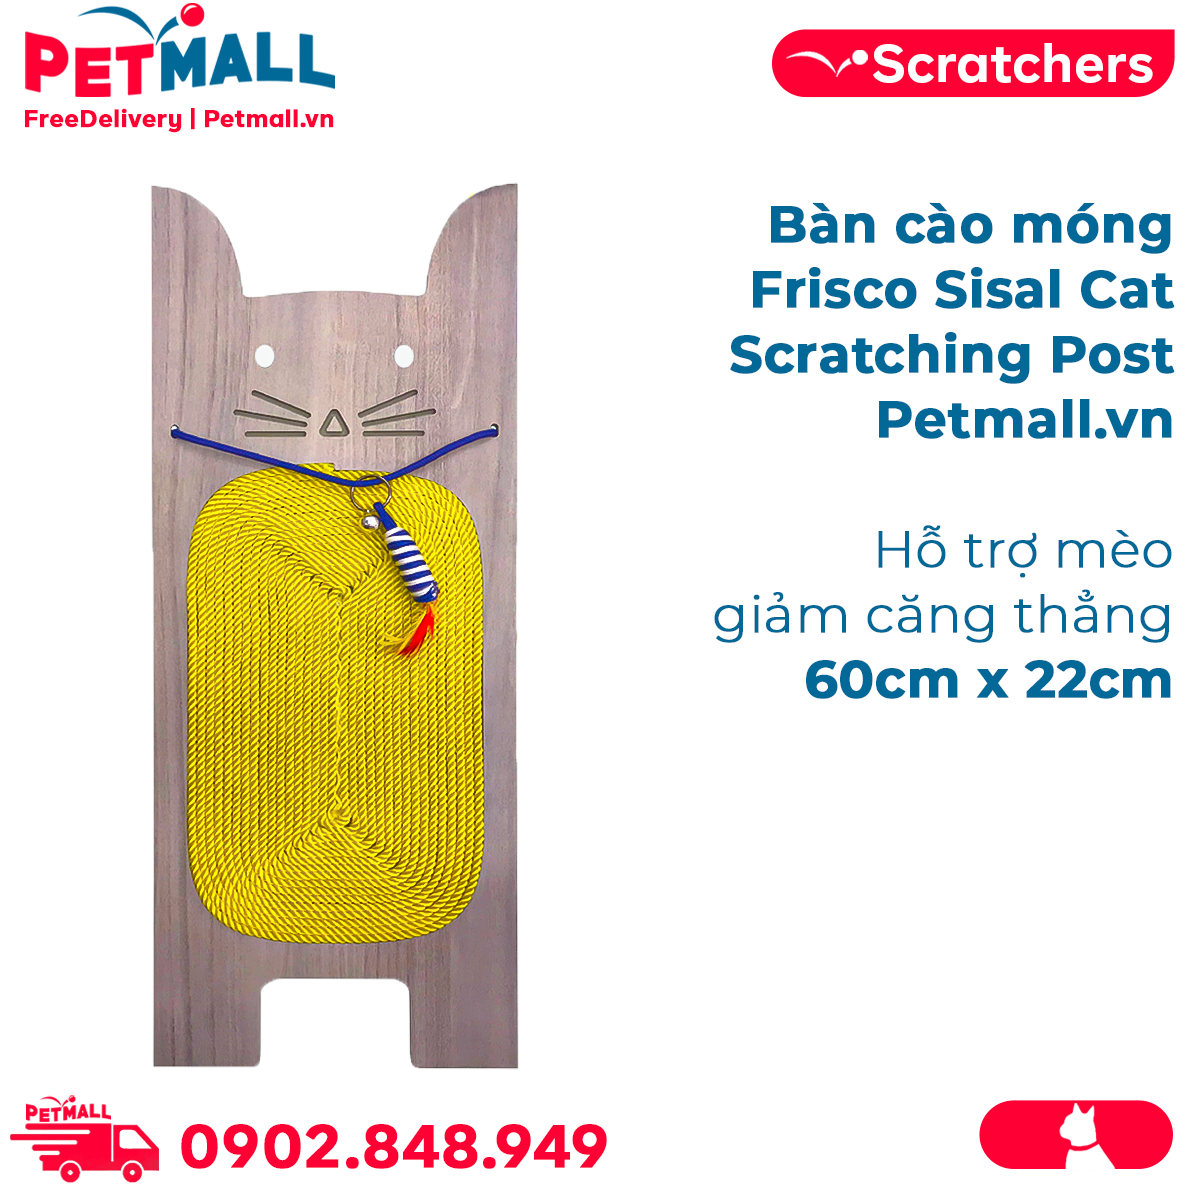 Bàn cào móng Frisco Sisal Cat Scratching Post 60cm x 22cm Petmall